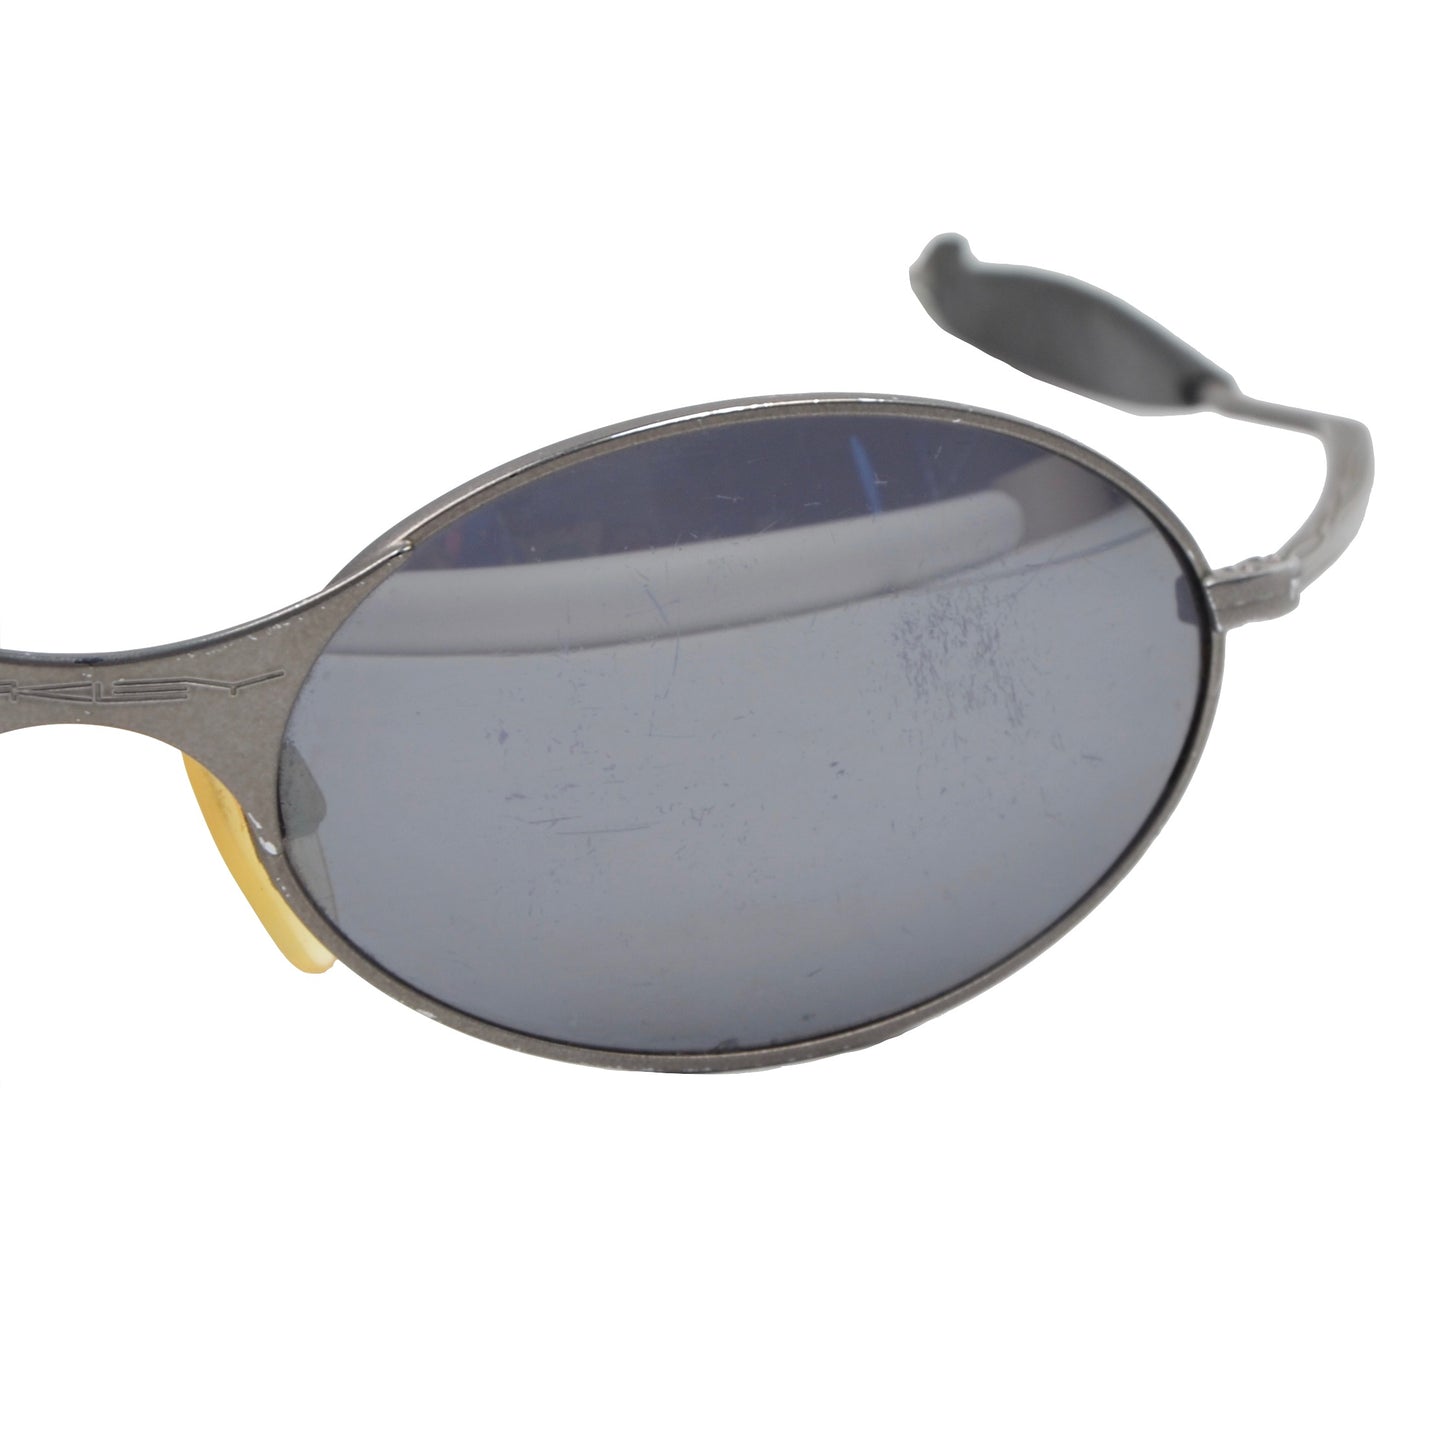 Oakley E-Wire-Sonnenbrille